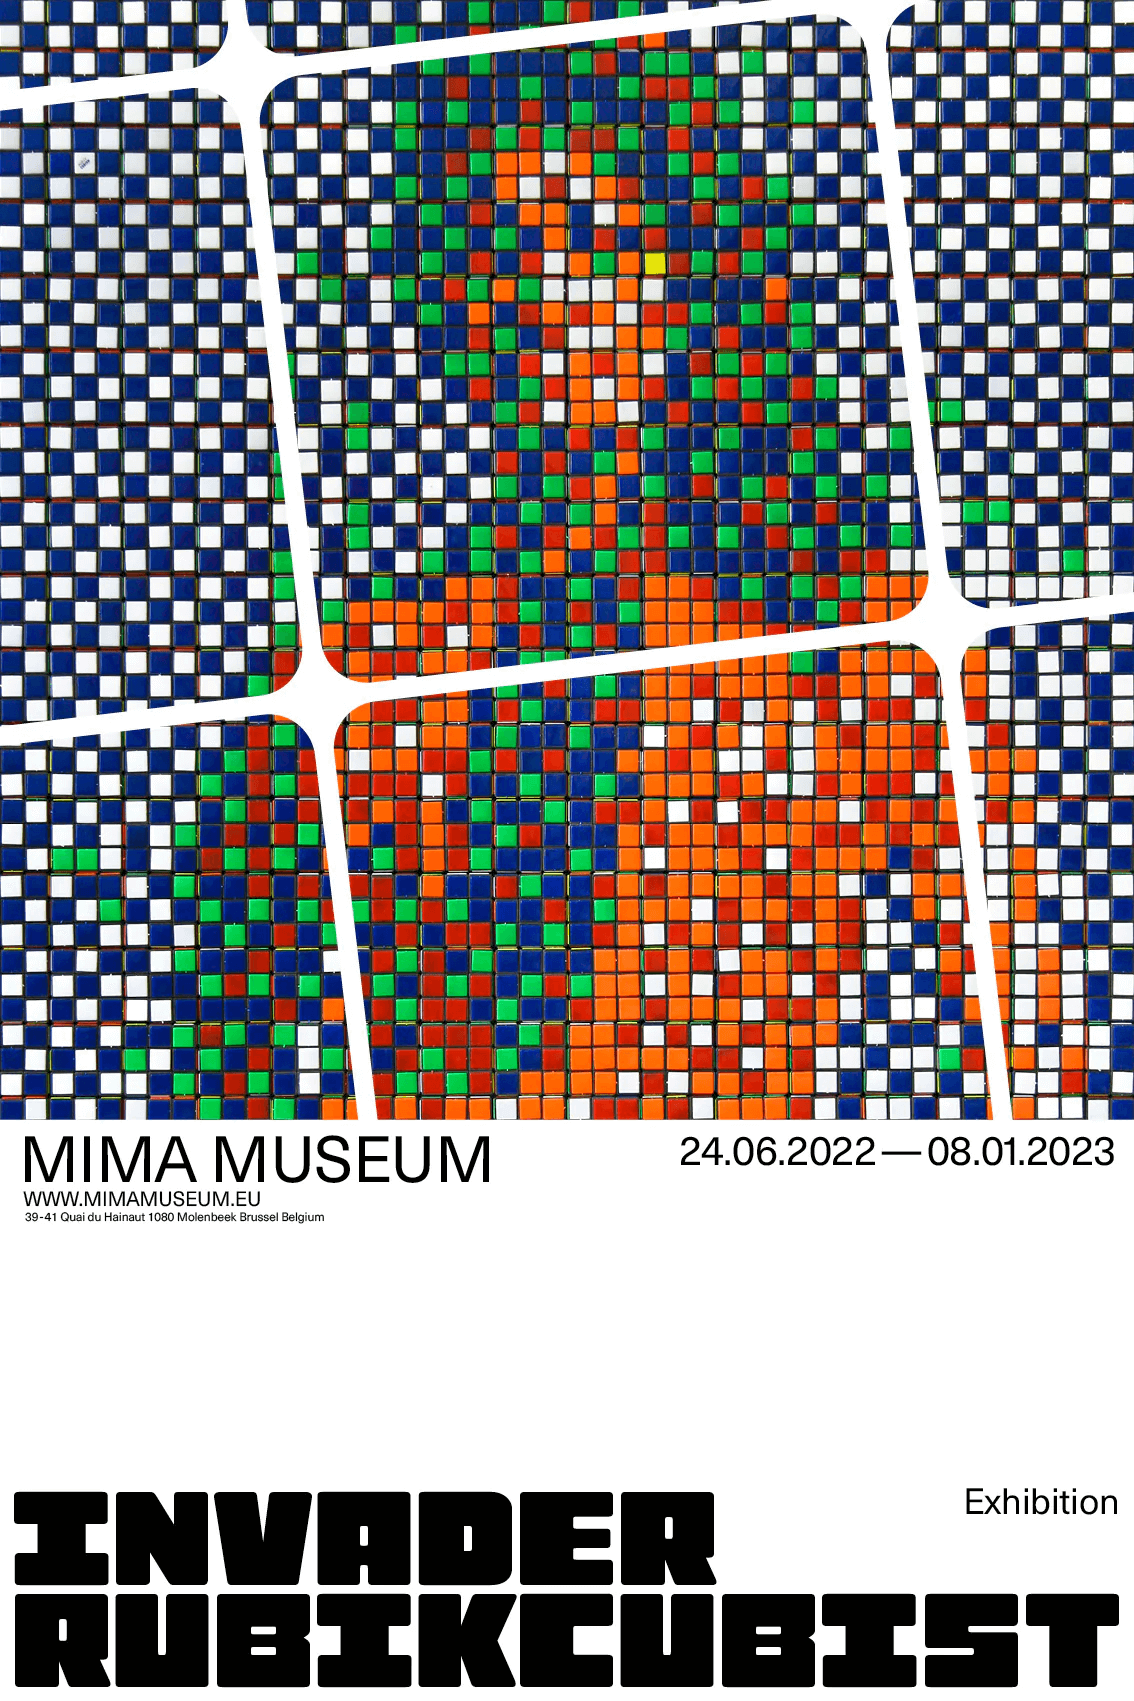 Invader, Rubikcubist MIMA Poster (v3), 2022